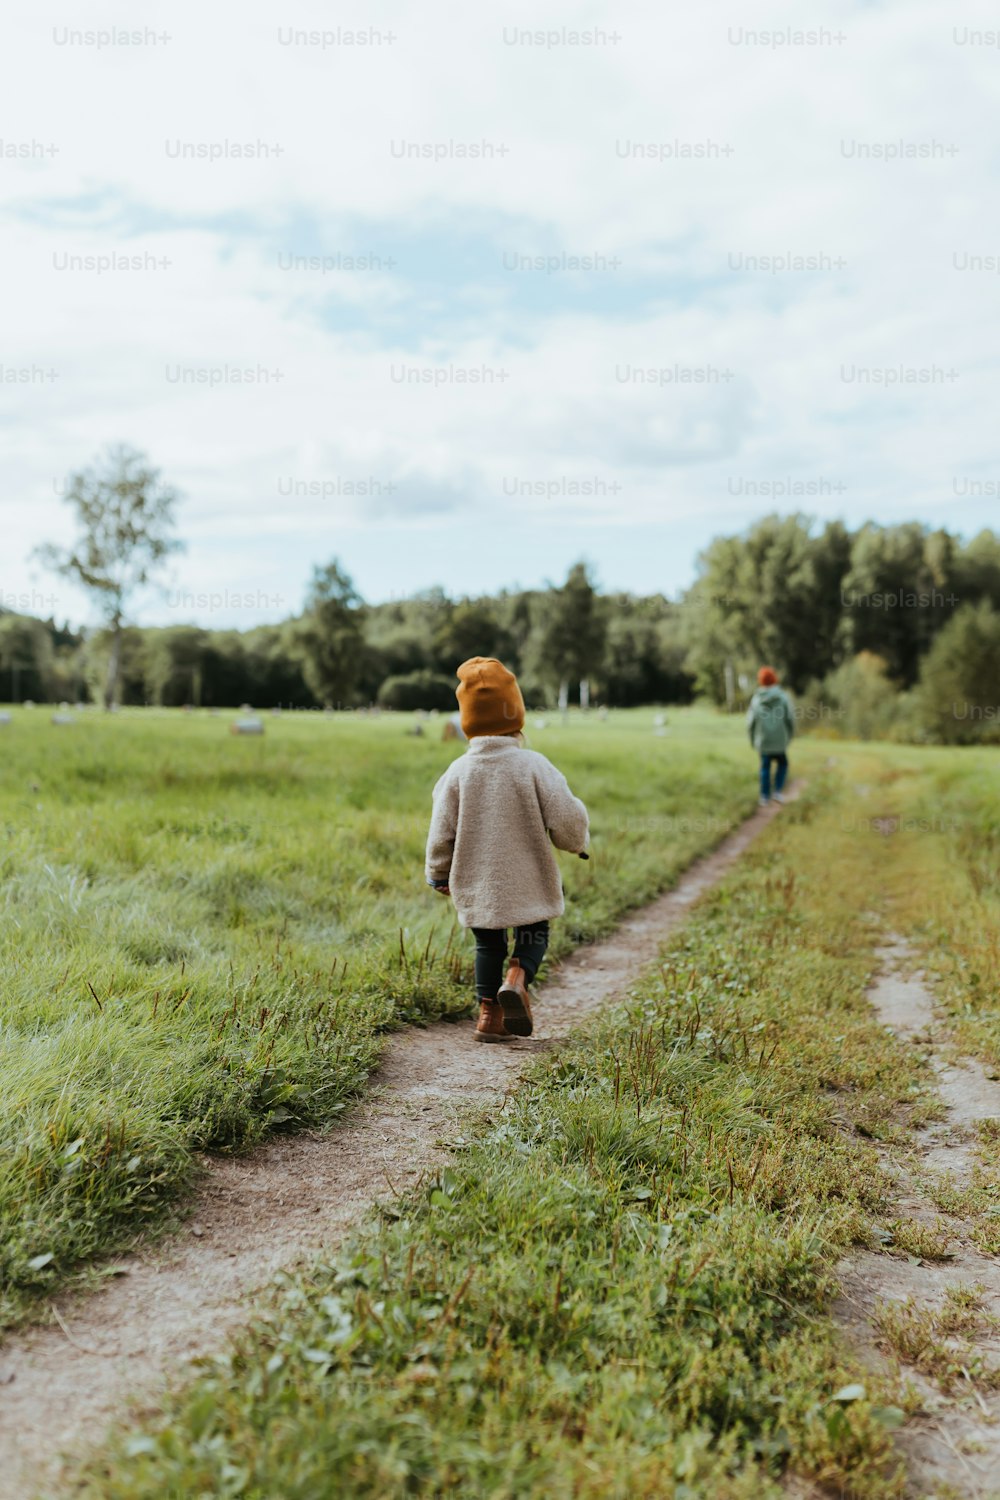 a little girl walking down a dirt road